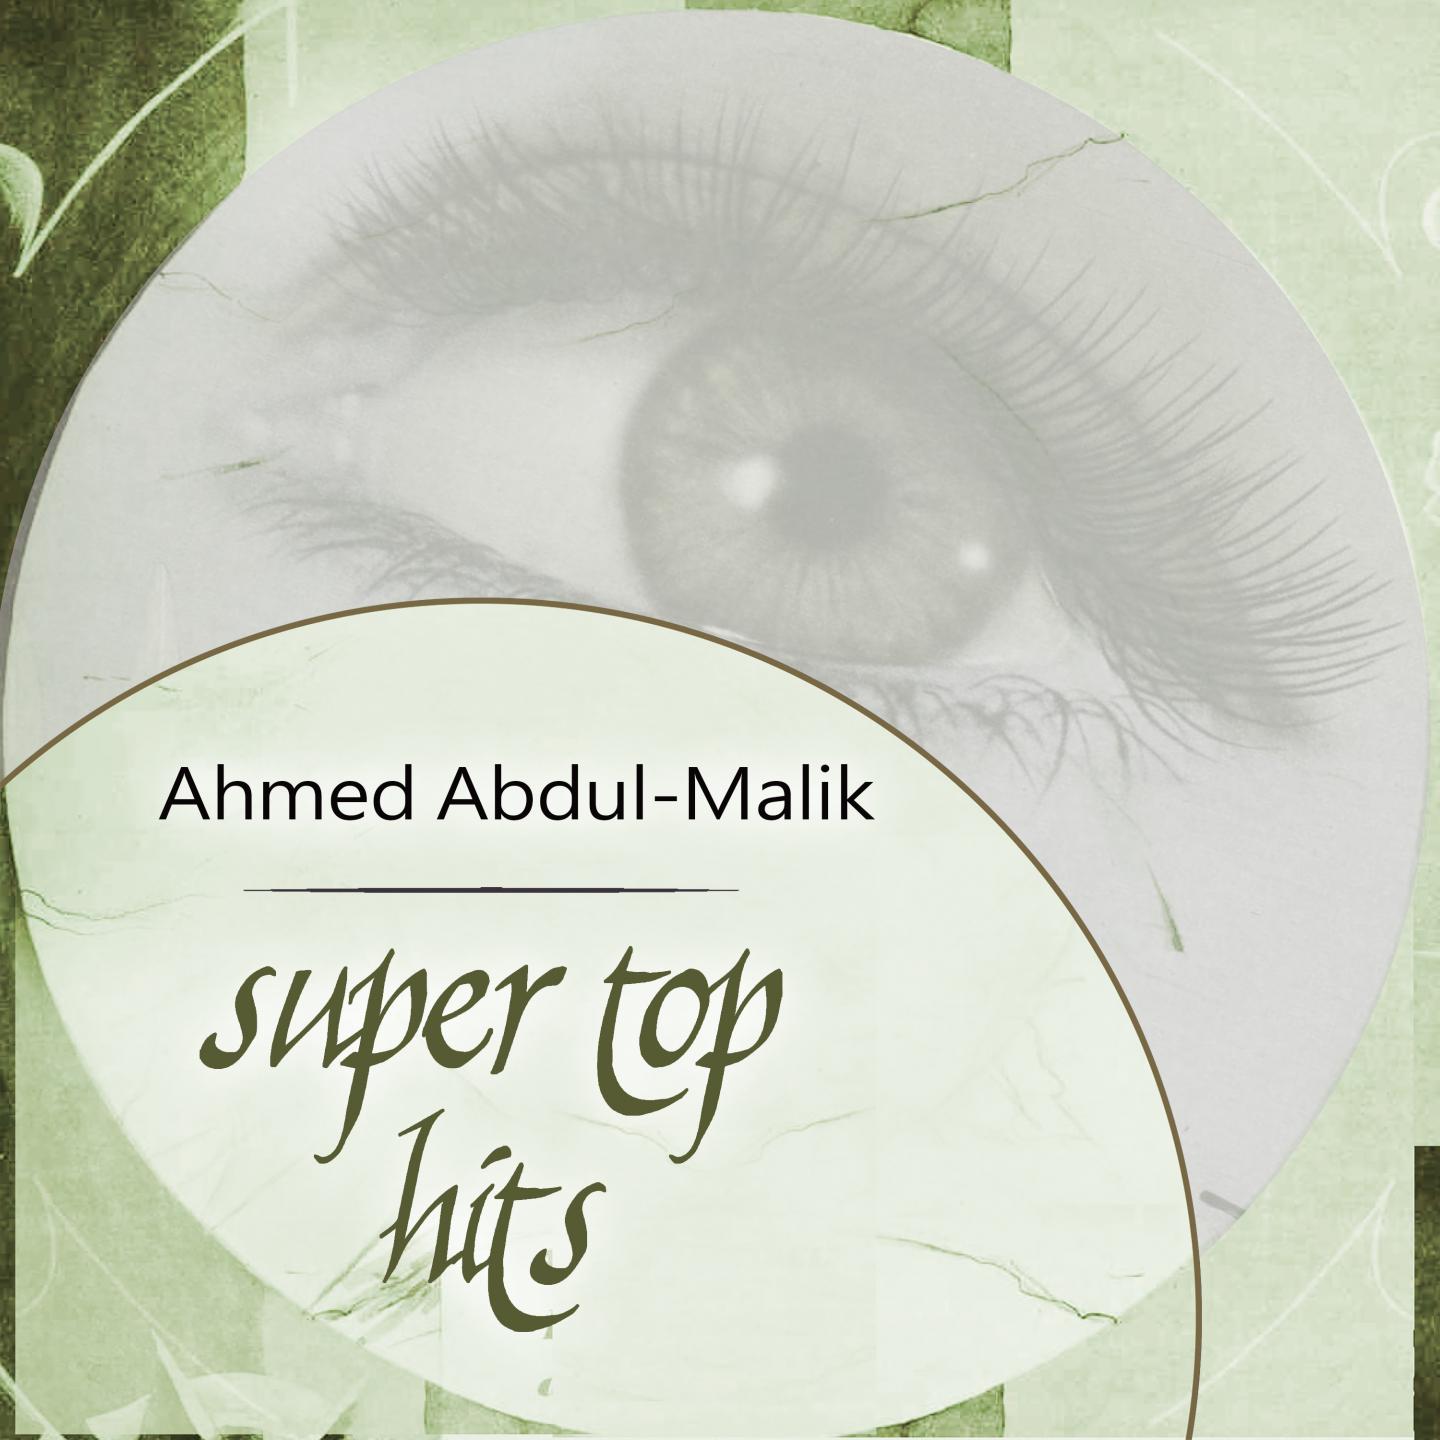 Ahmed Abdul-Malik - The Hustlers